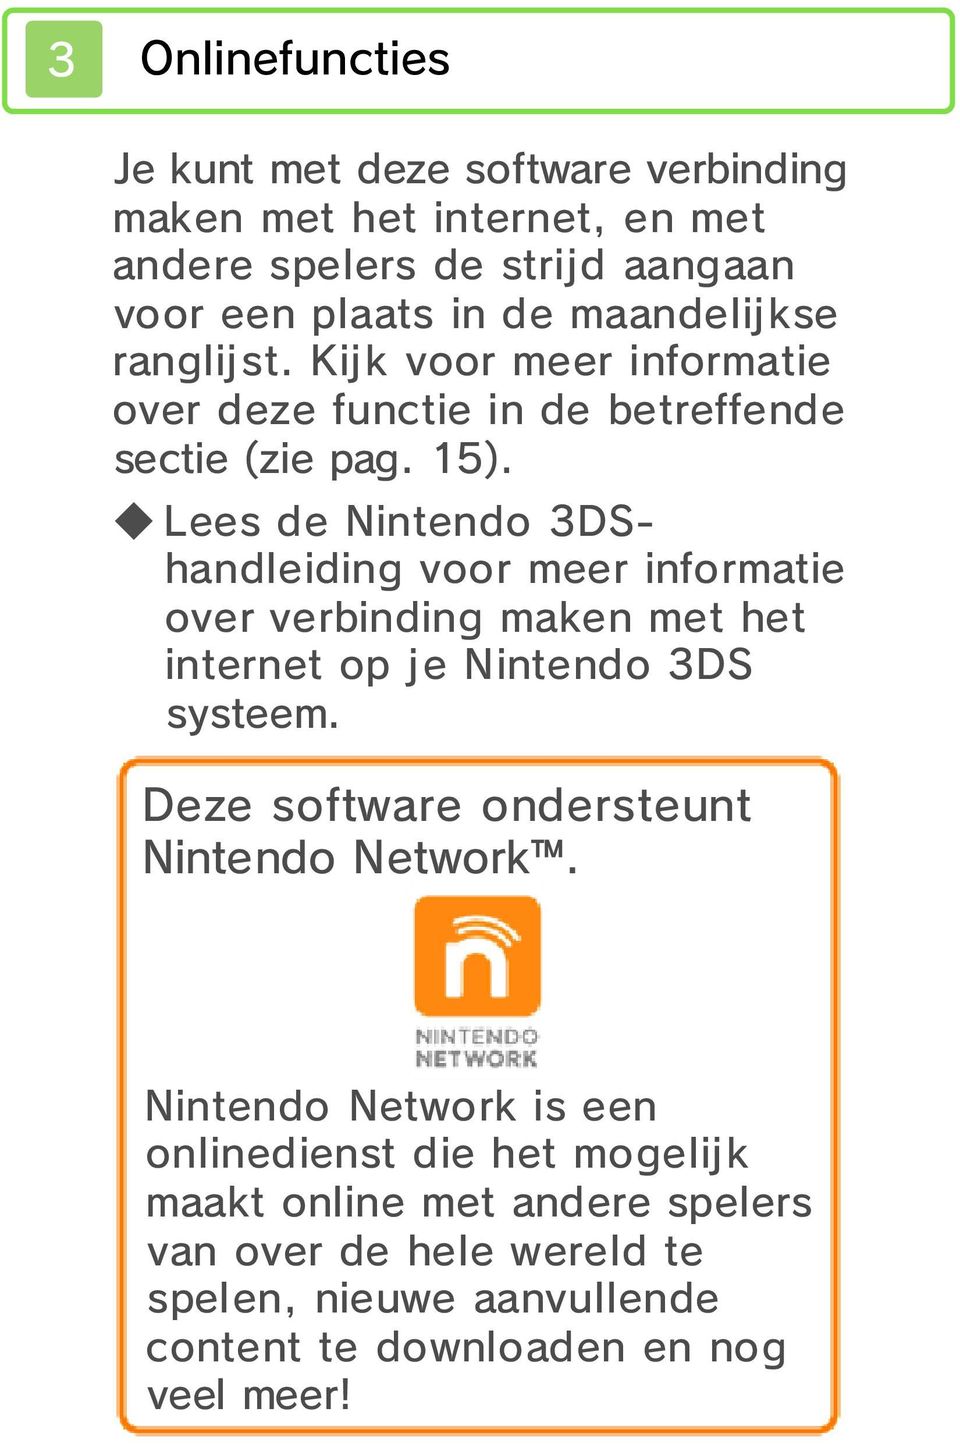 Lees de Nintendo 3DShandleiding voor meer informatie over verbinding maken met het internet op je Nintendo 3DS systeem.